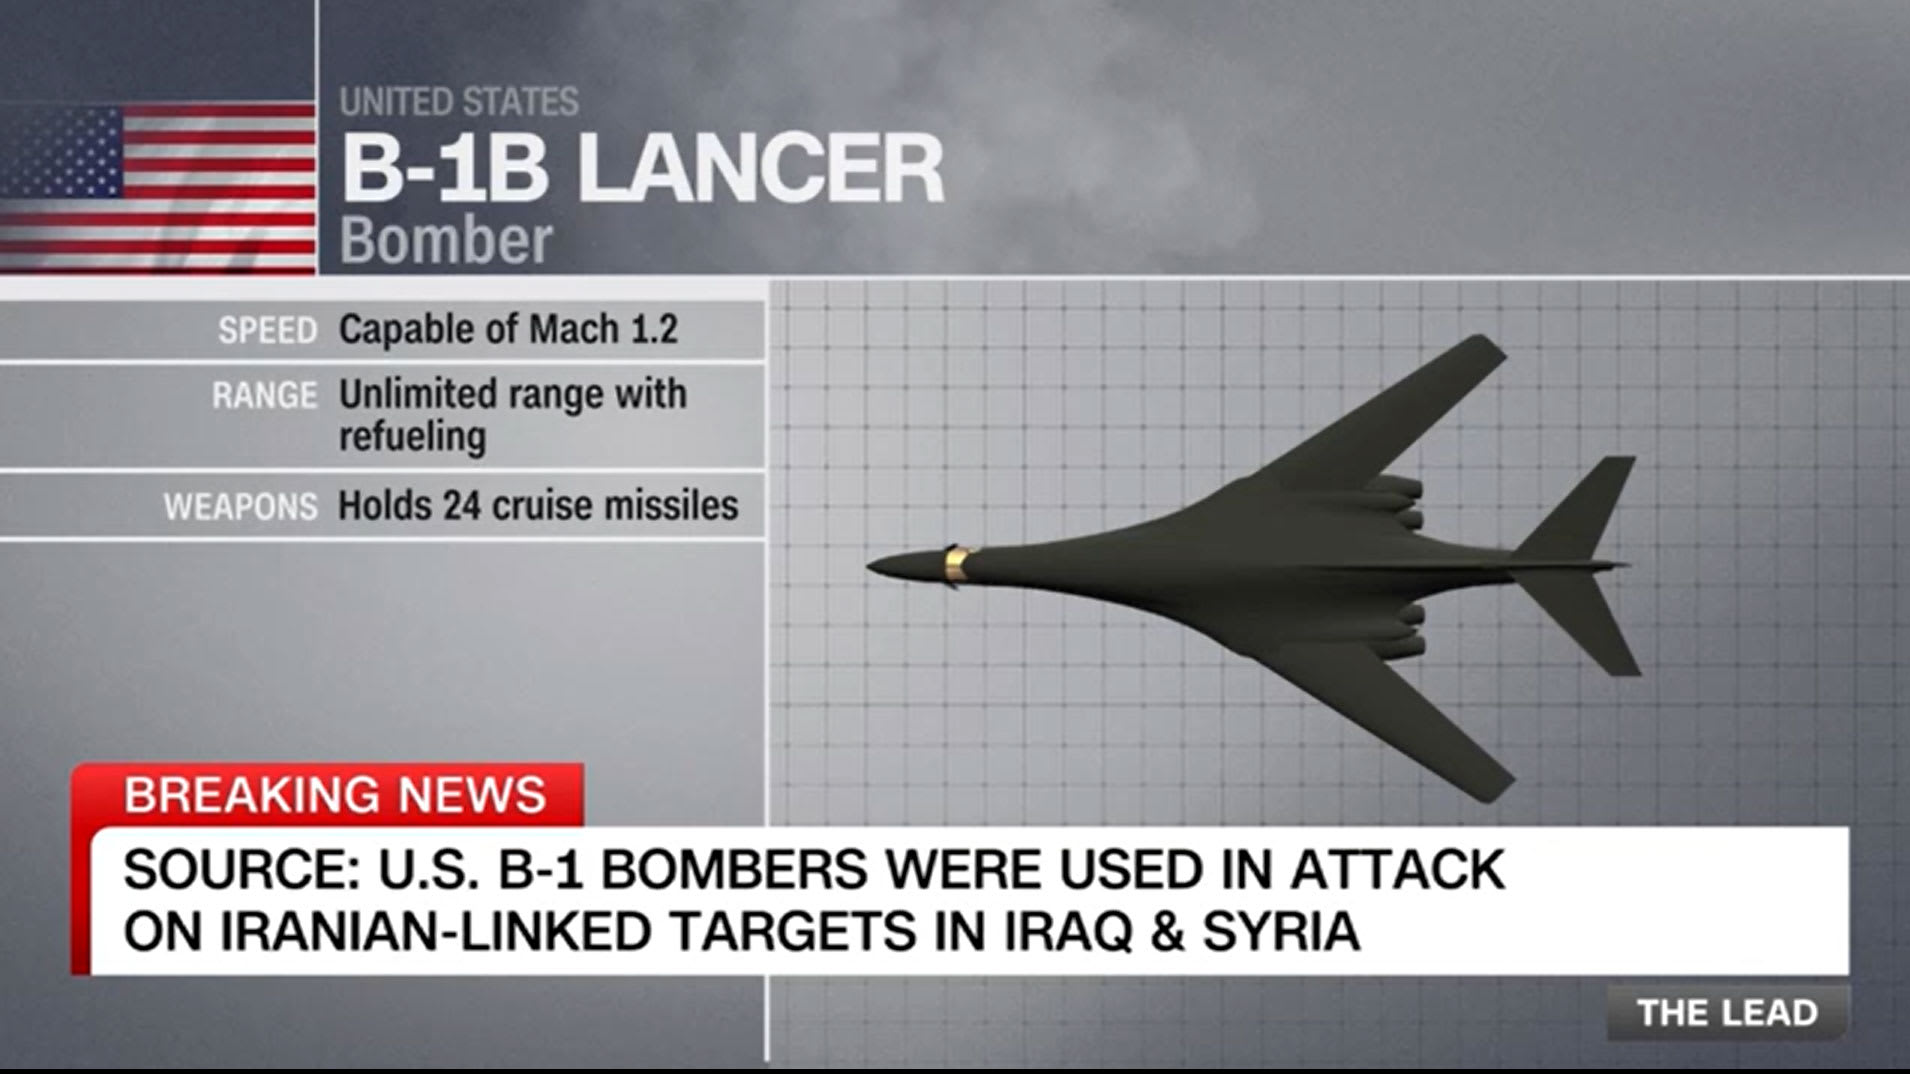 "أكثر من ضربة أنف".. محلل يوضح لـCNN معنى استخدام قاذفات B-1 بالضربة الأمريكية على العراق وسوريا